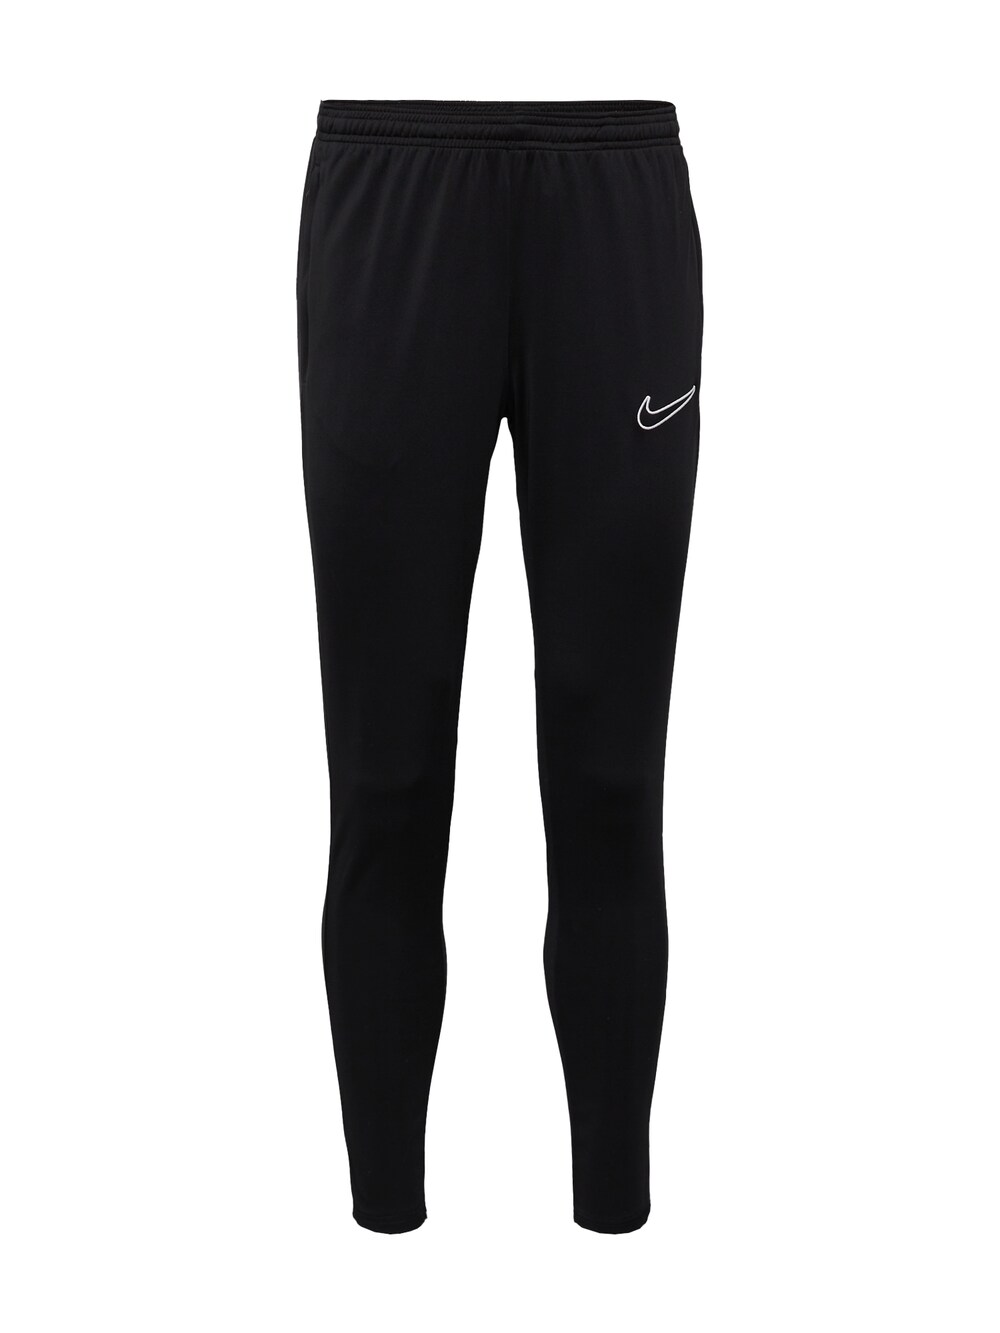 Зауженные тренировочные брюки Nike Academy23, черный